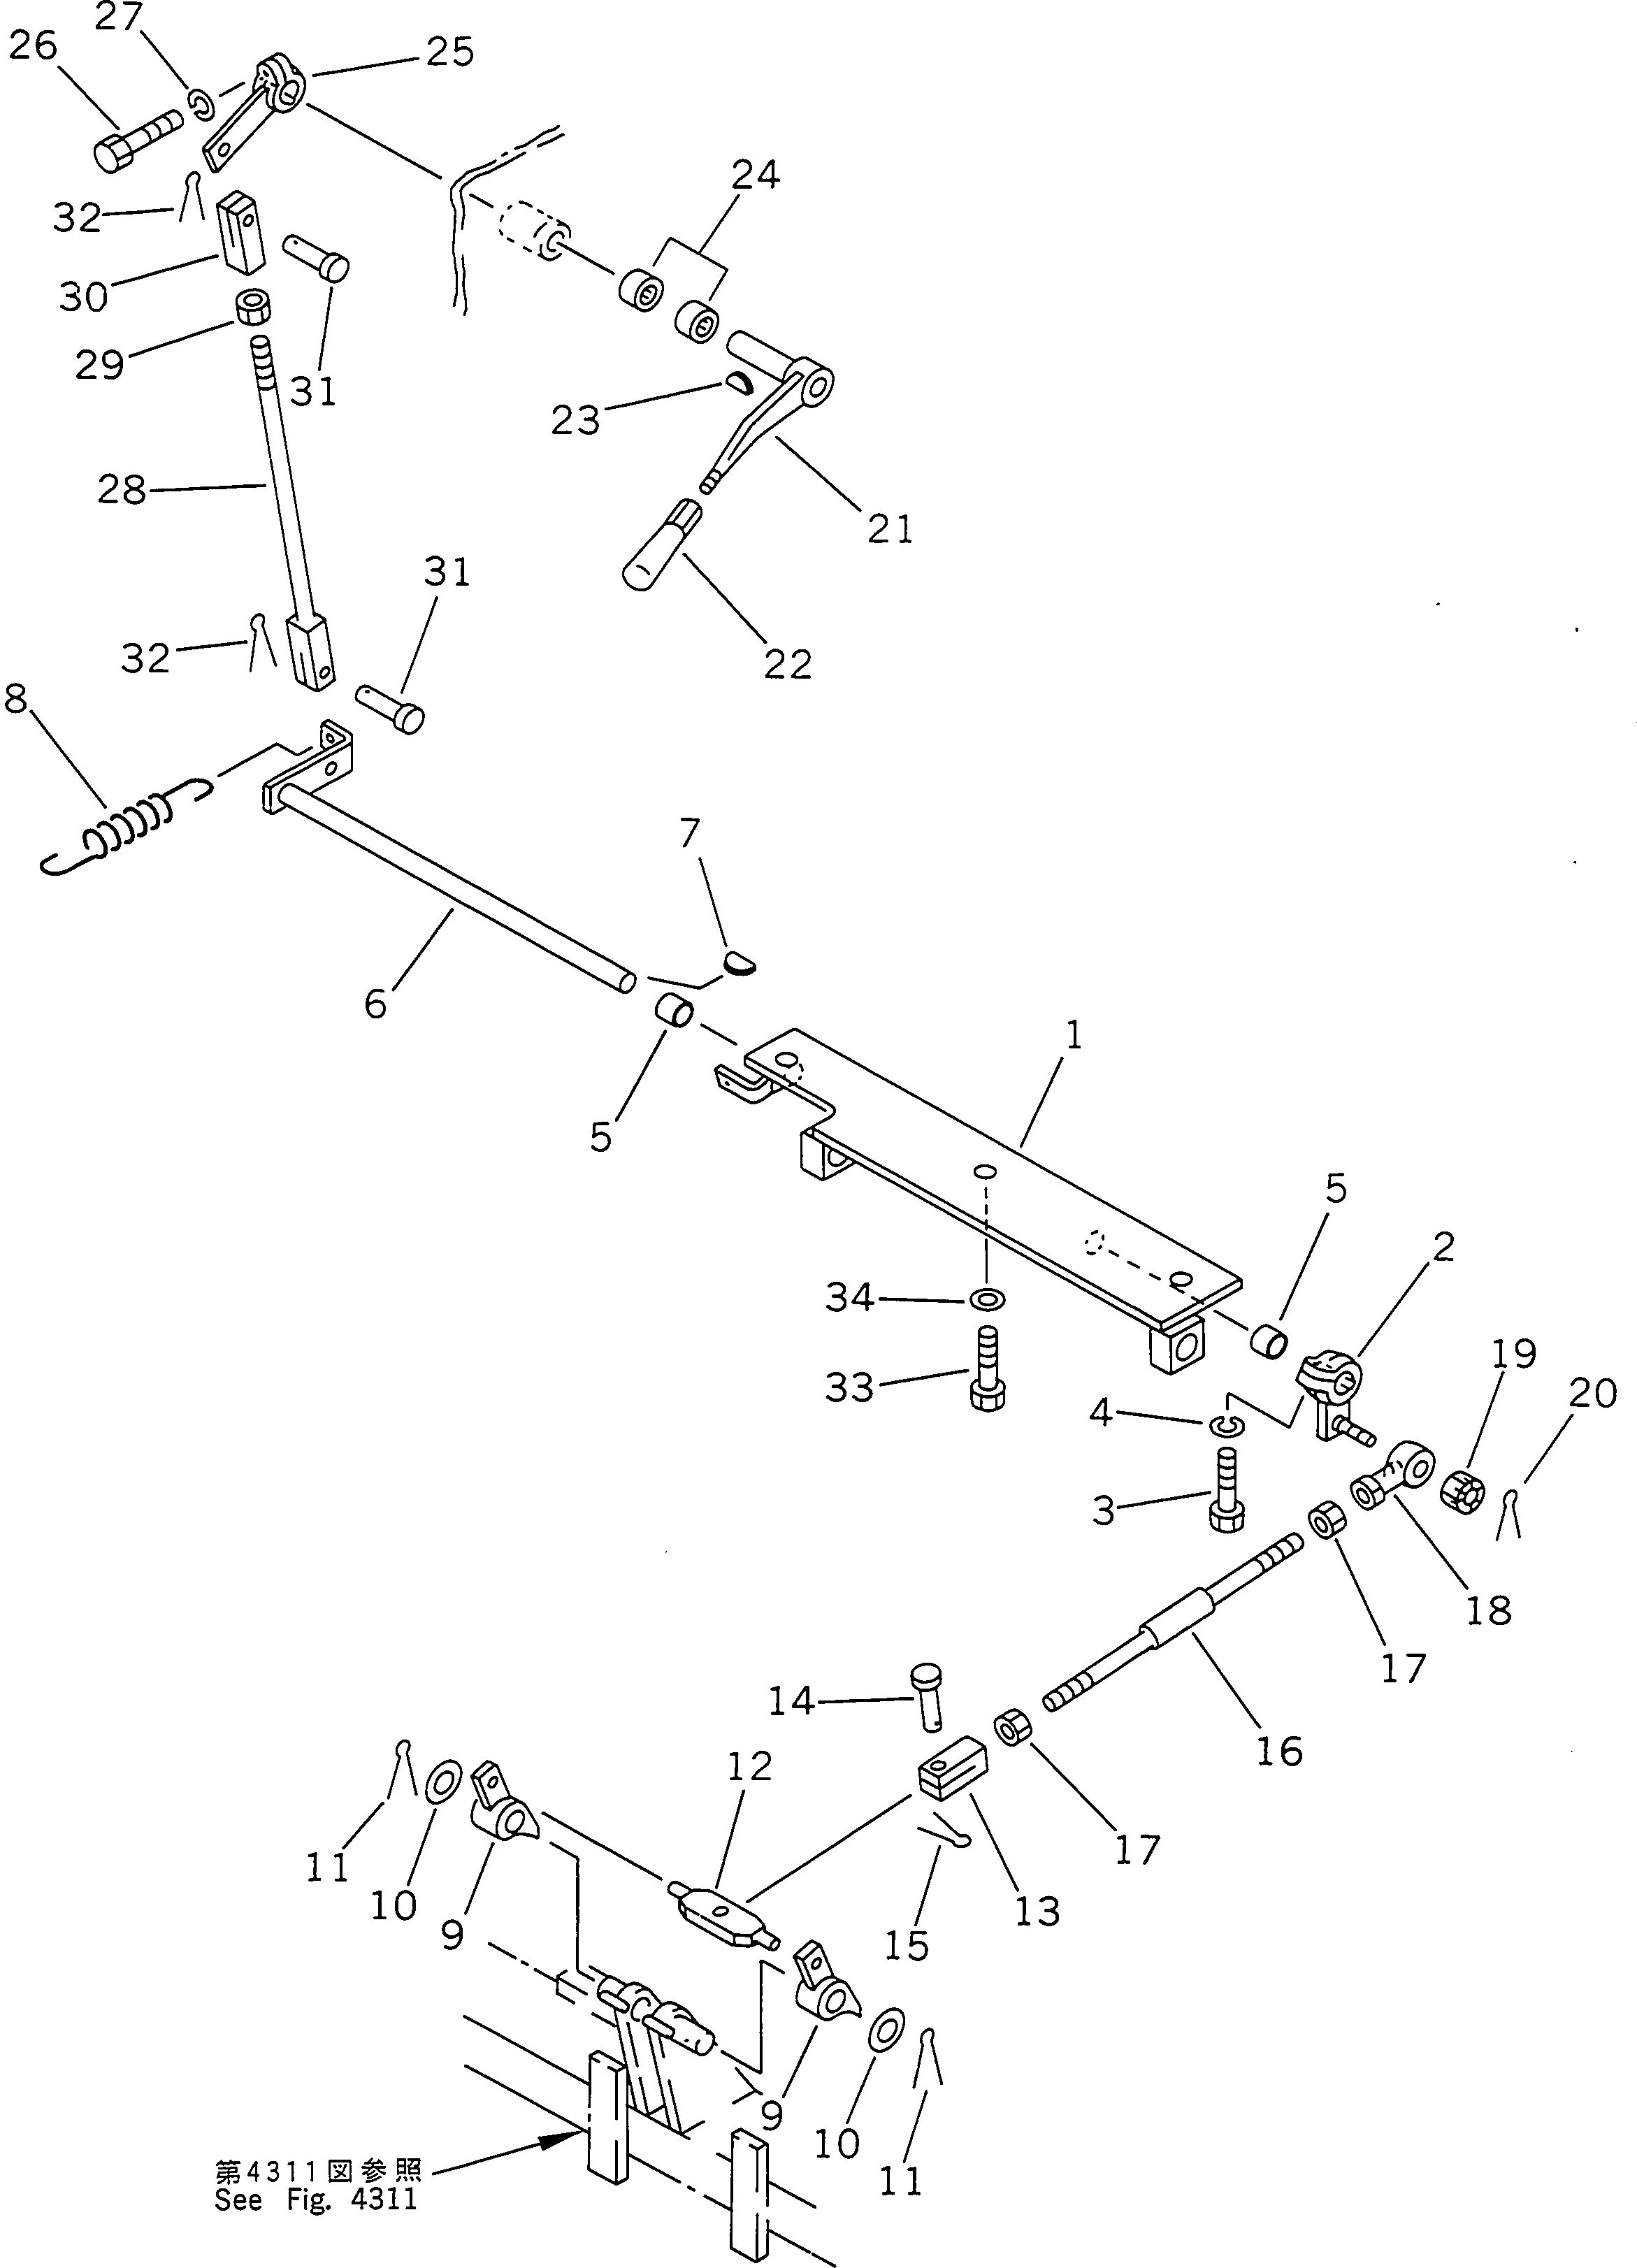 120. PARKING BRAKE LEVER [4331] - Komatsu part D155A-2 S/N 50001-UP (S6D155-4 Eng. Installed) [d155a-2c]